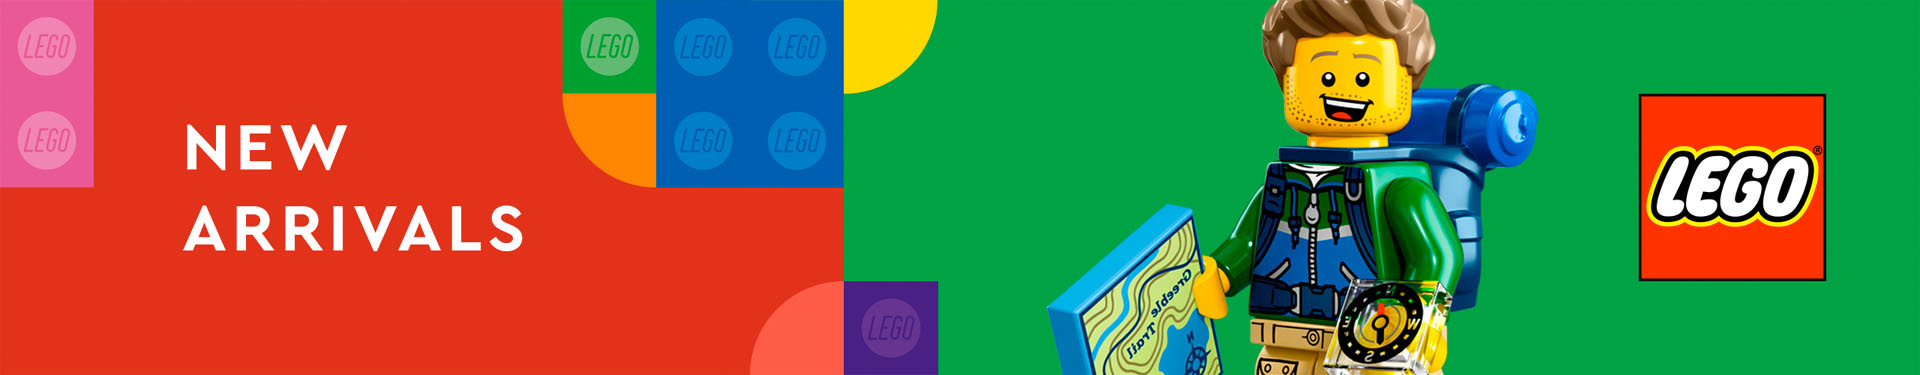 LEGO-Shopper-banner-1920x375 Nyheter.jpg